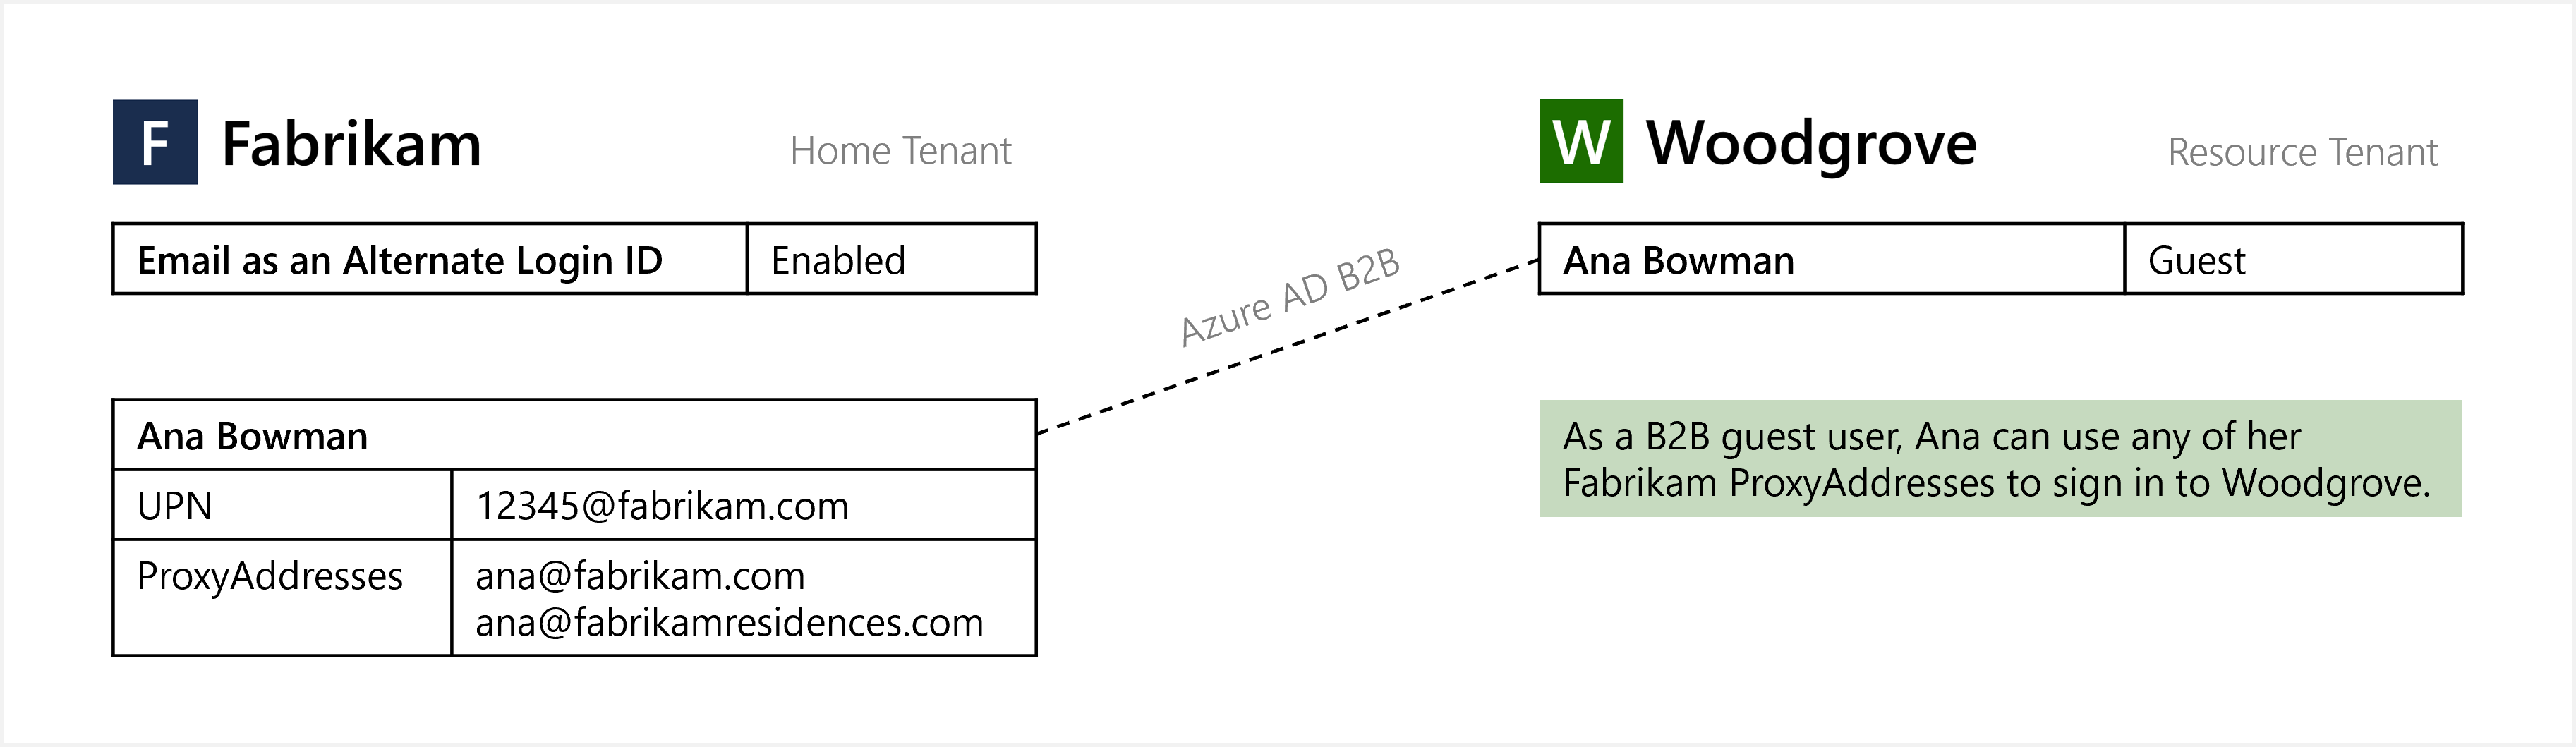 Logowanie do usługi Azure AD przy użyciu poczty e-mail jako alternatywnego  identyfikatora logowania | Microsoft Docs